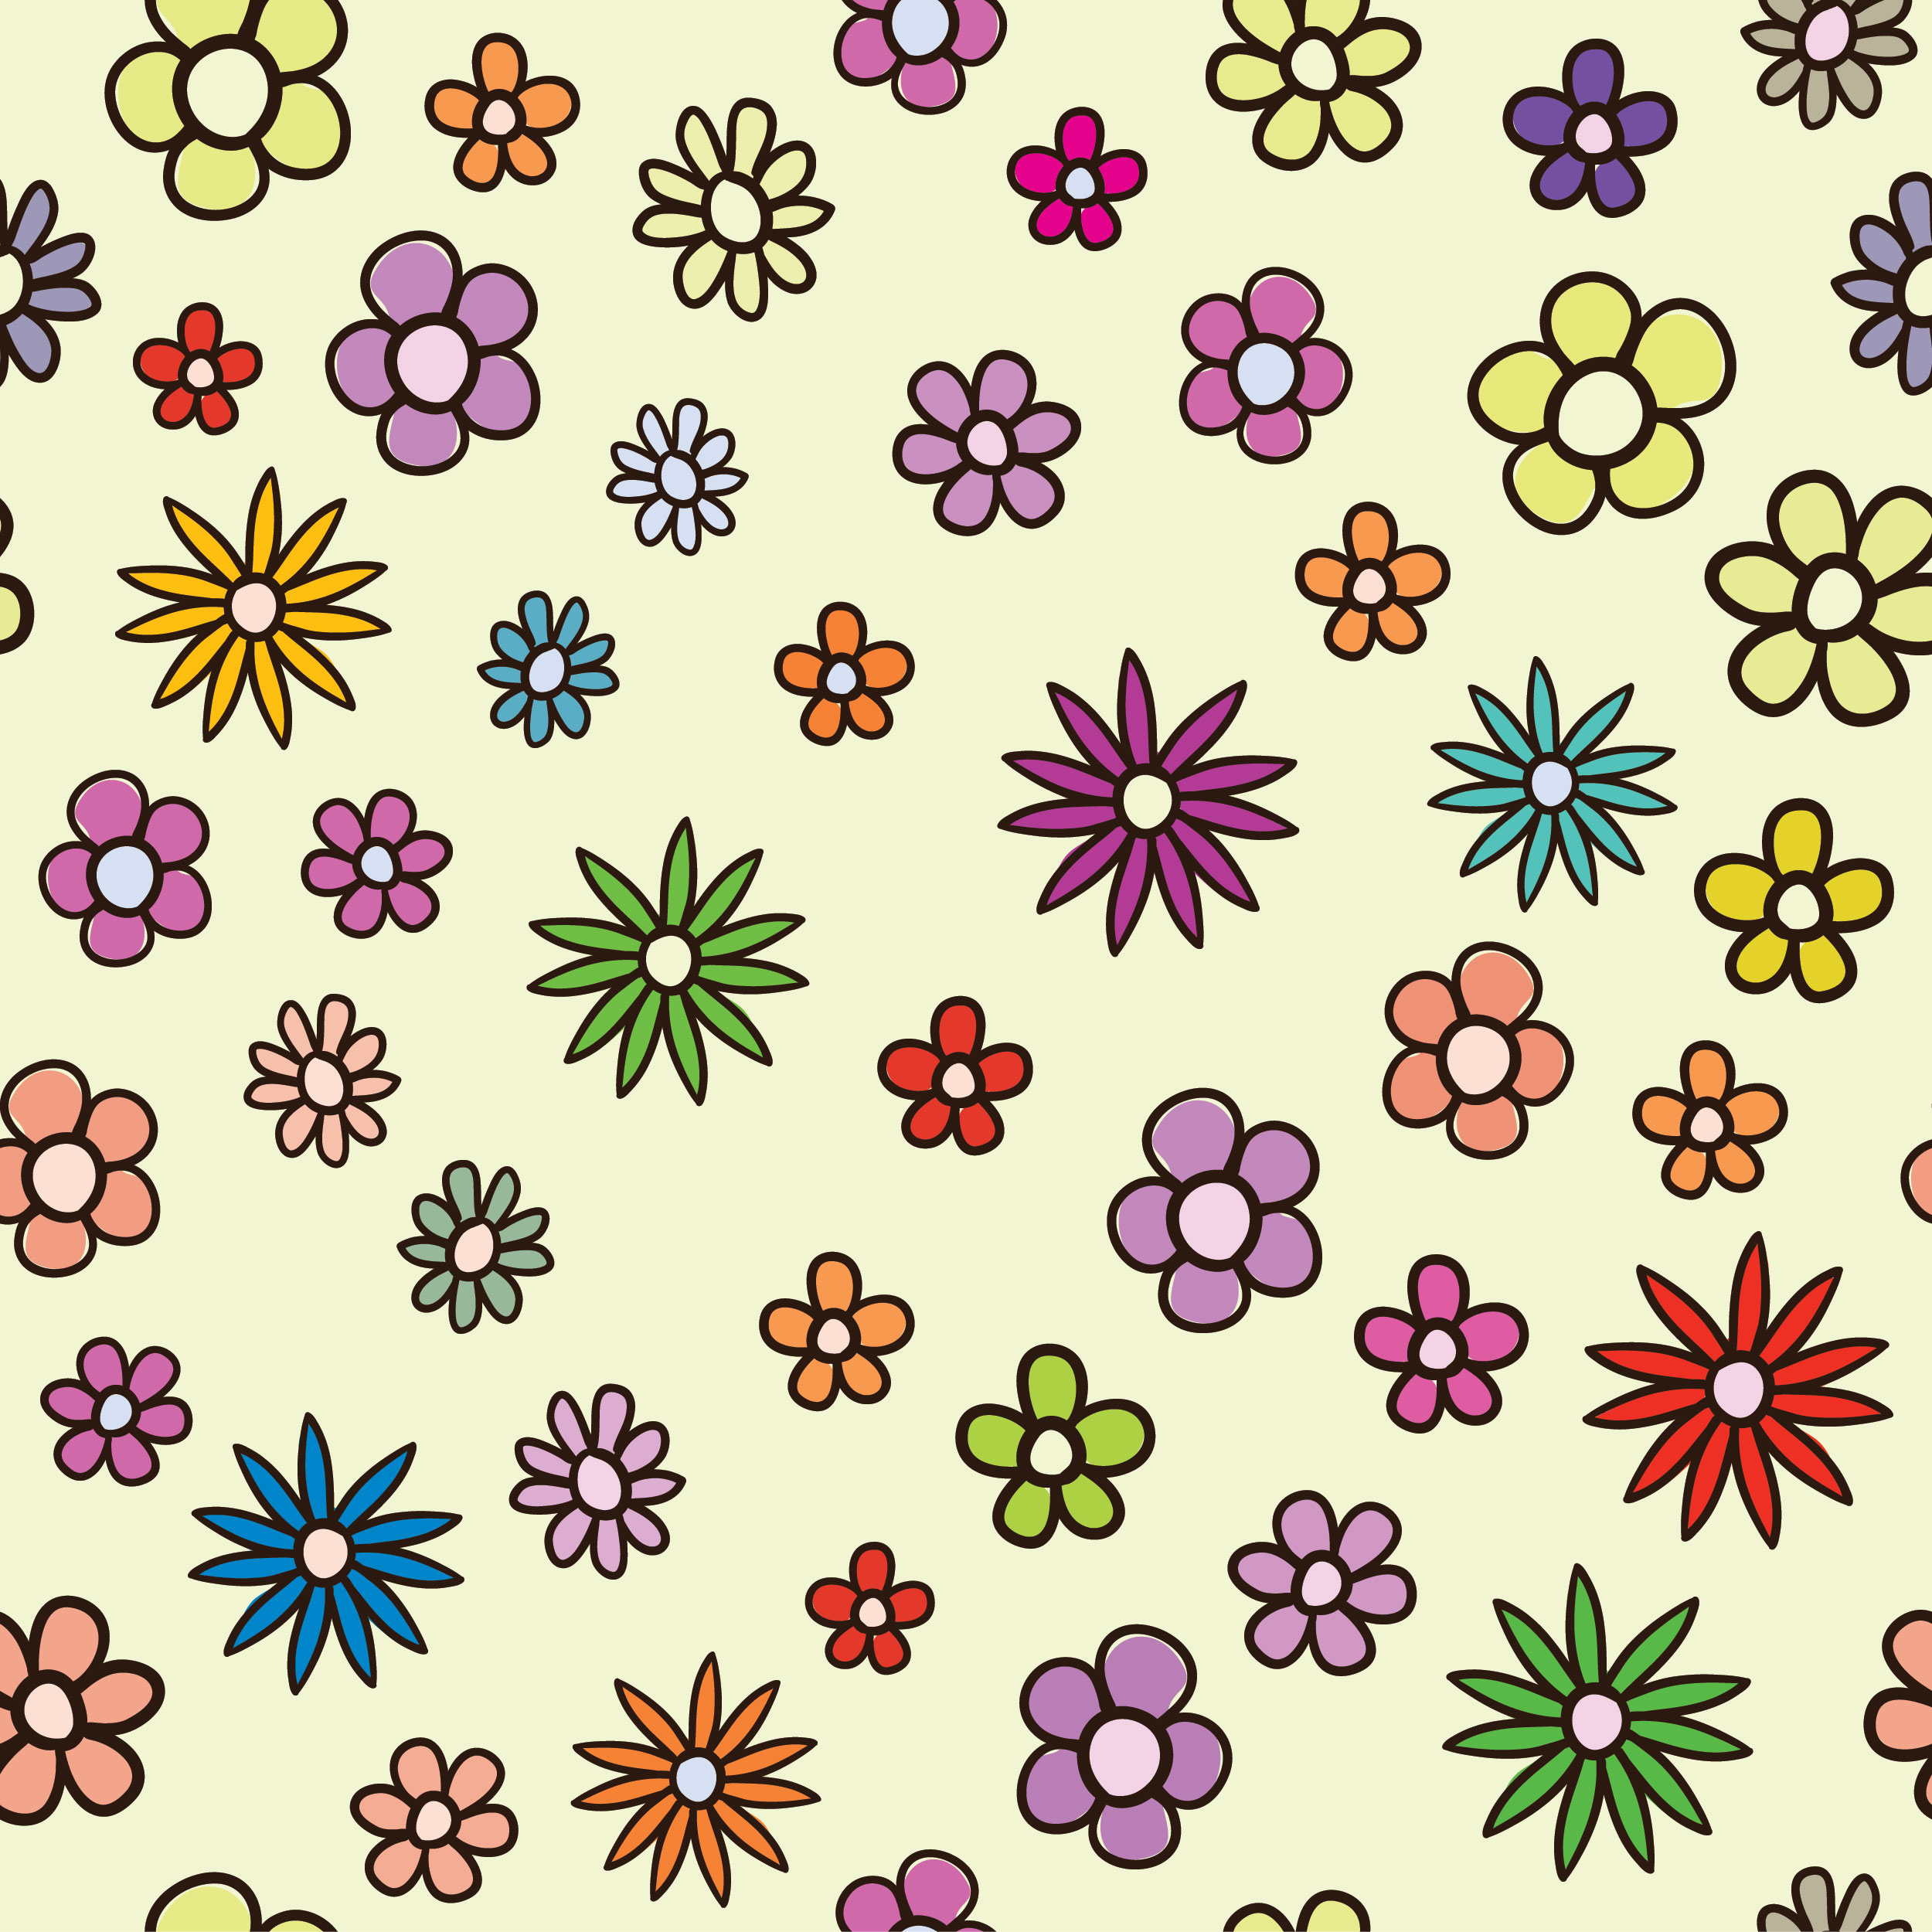 壁紙 背景イラスト 花の模様 柄 パターン No 071 かわいい花 カラフル